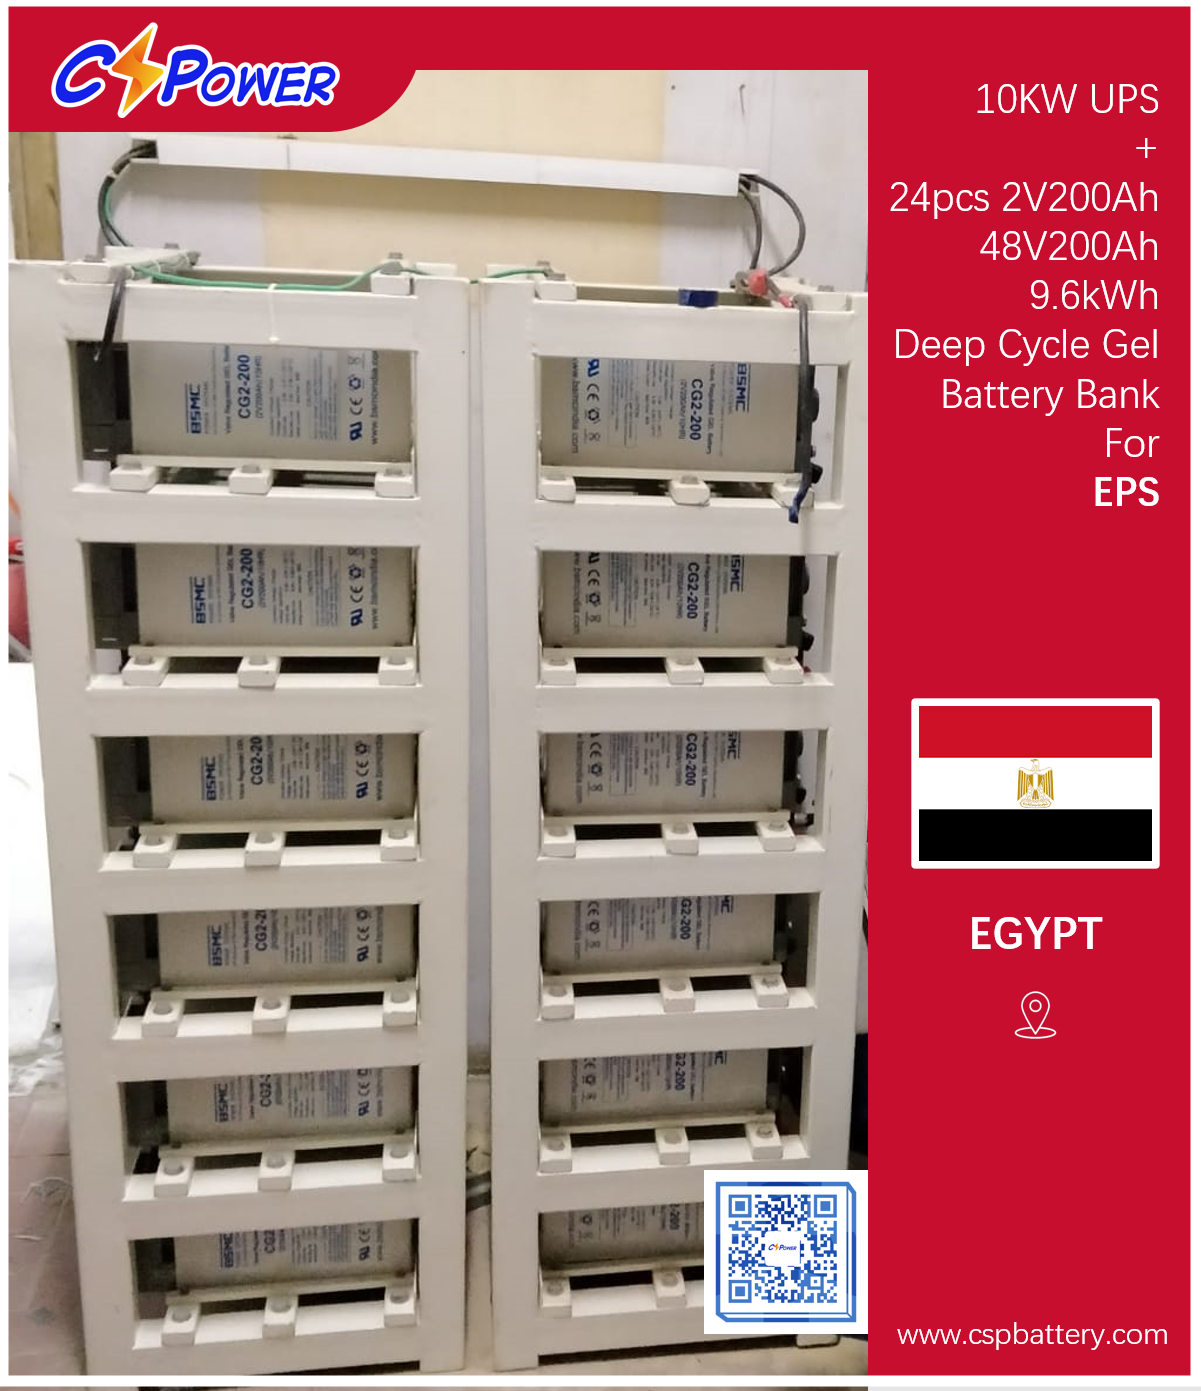 Proyekto ng Baterya ng CSPower: 24PCS 2V 200AH Deep Cycle Solar Gel Battery Para sa EPS